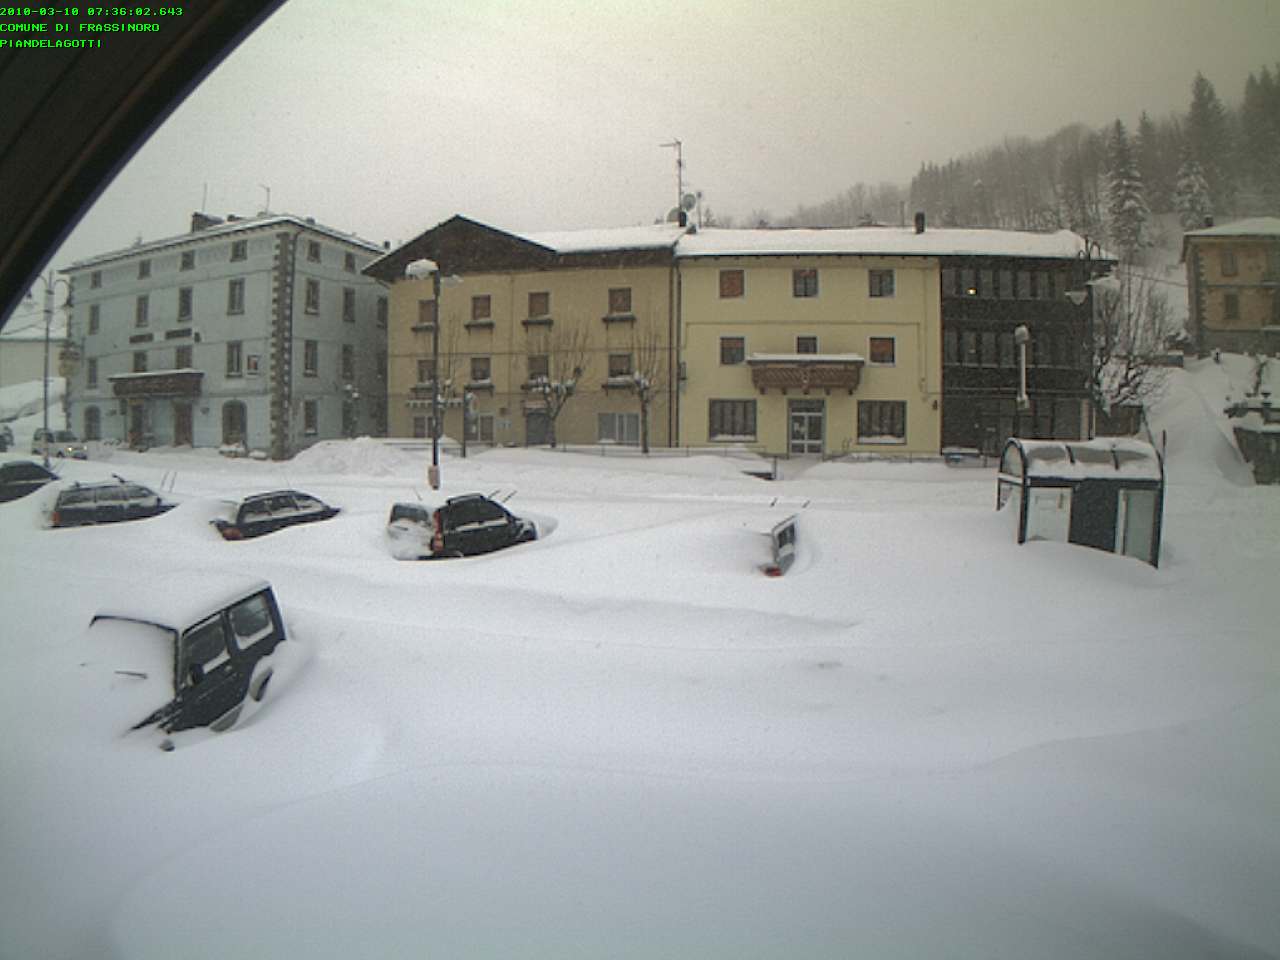 Snow in Frassinoro Piandelagotti